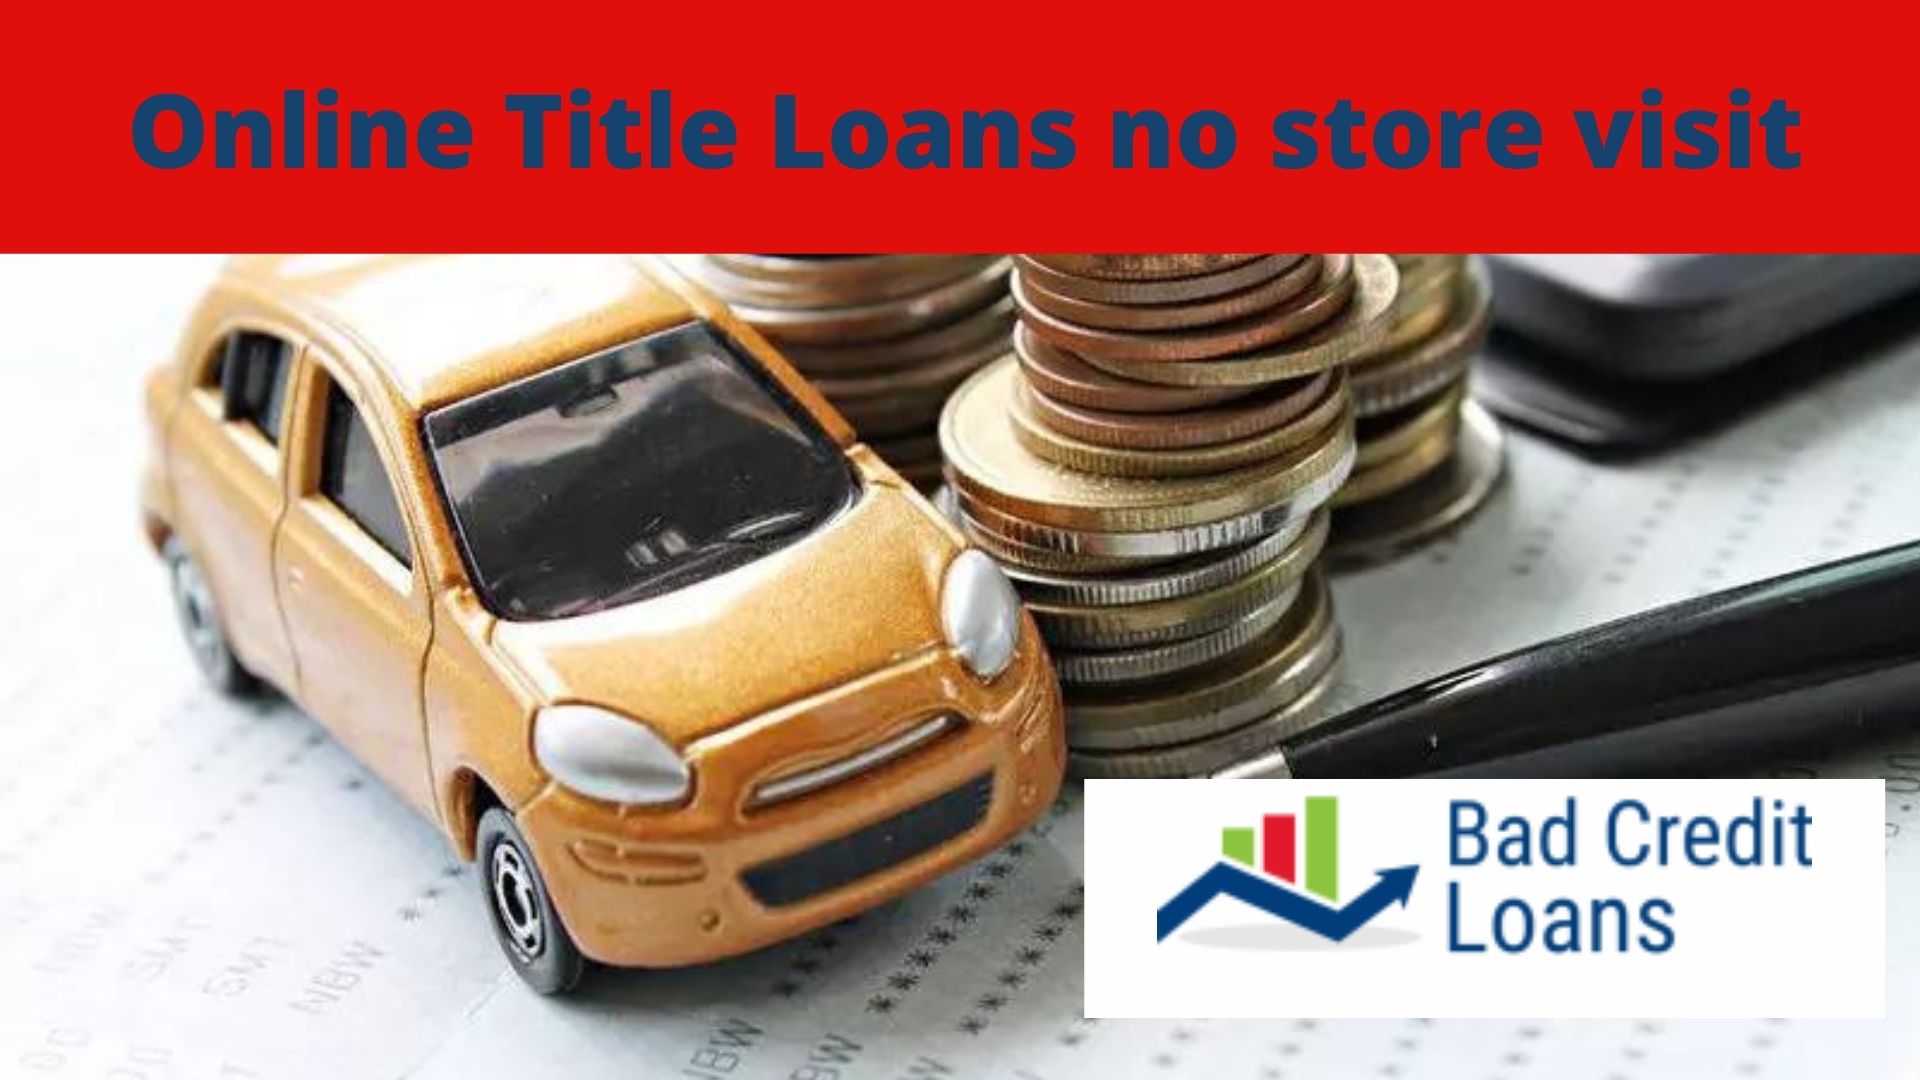 Online Title Loans no store visit